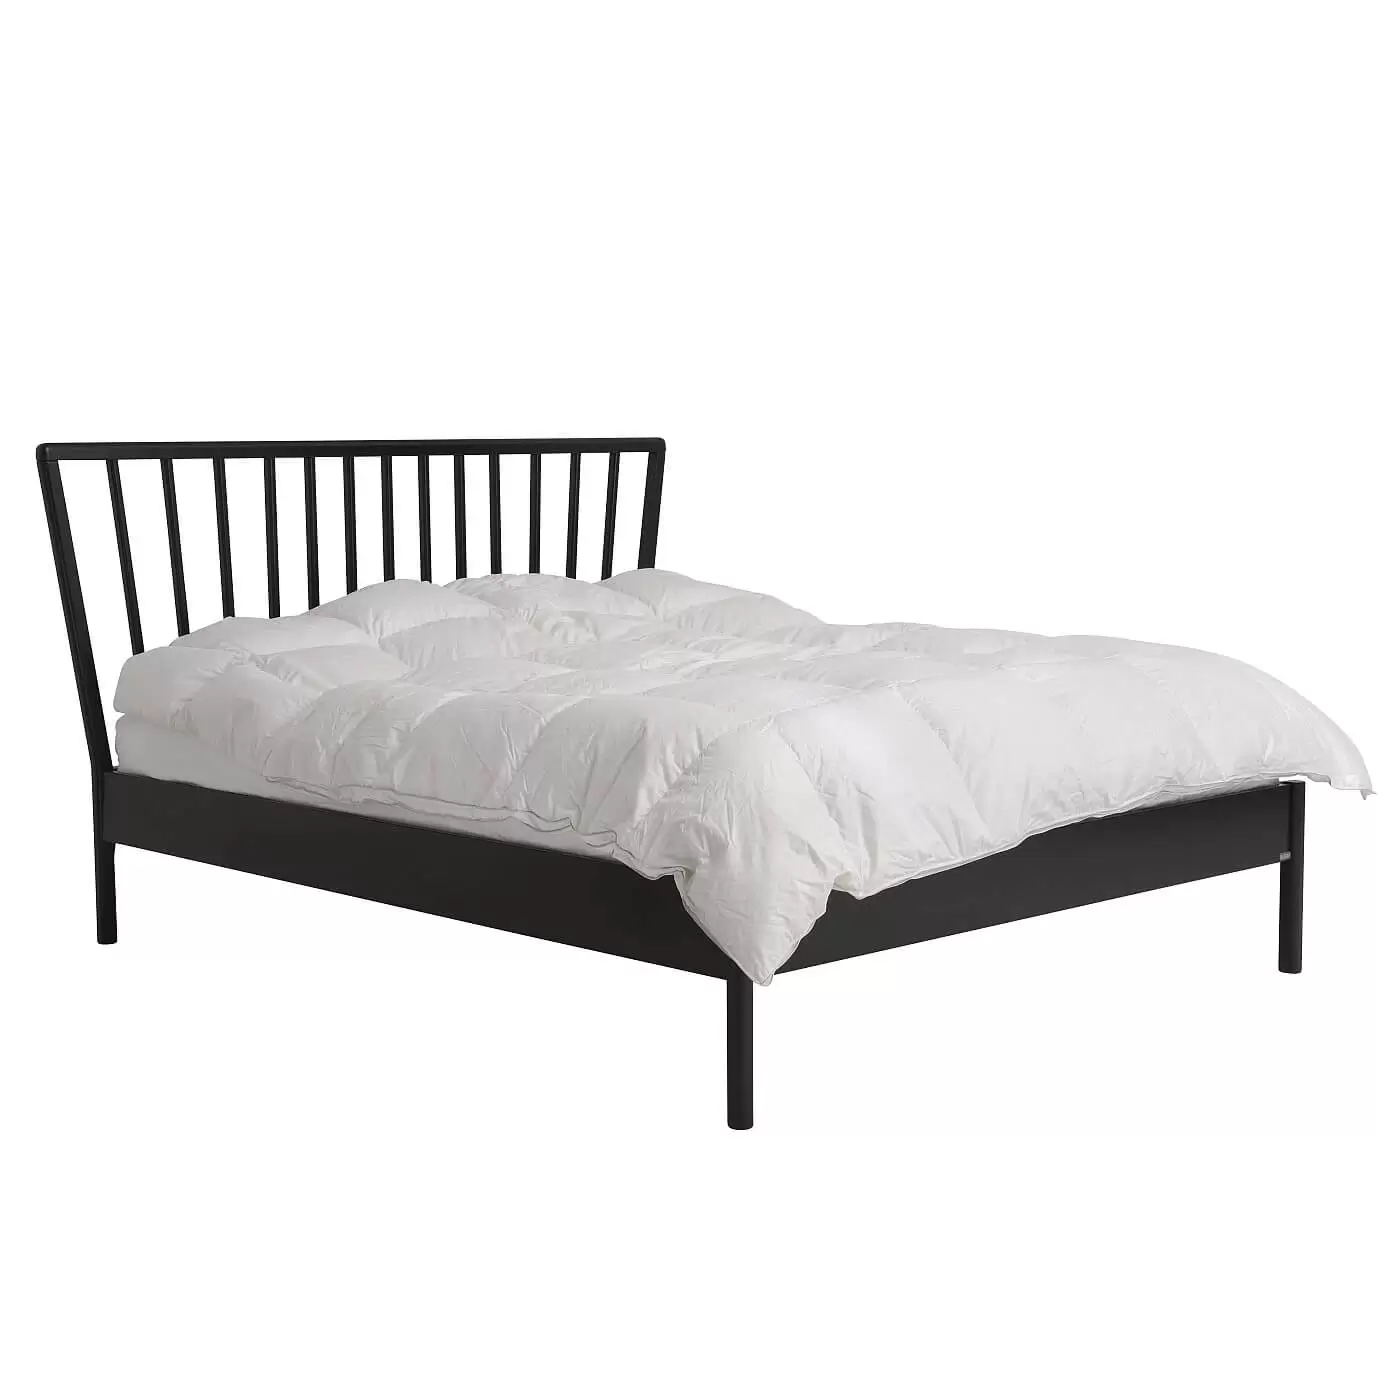 Łóżko skandynawskie czarne MELODIA. Widok w całości łóżka do sypialni z drewnianym czarnym wysokim ażurowym szczytem. Na czarnym łóżku 160x200 na wysokich nóżkach leżąca biała kołdra